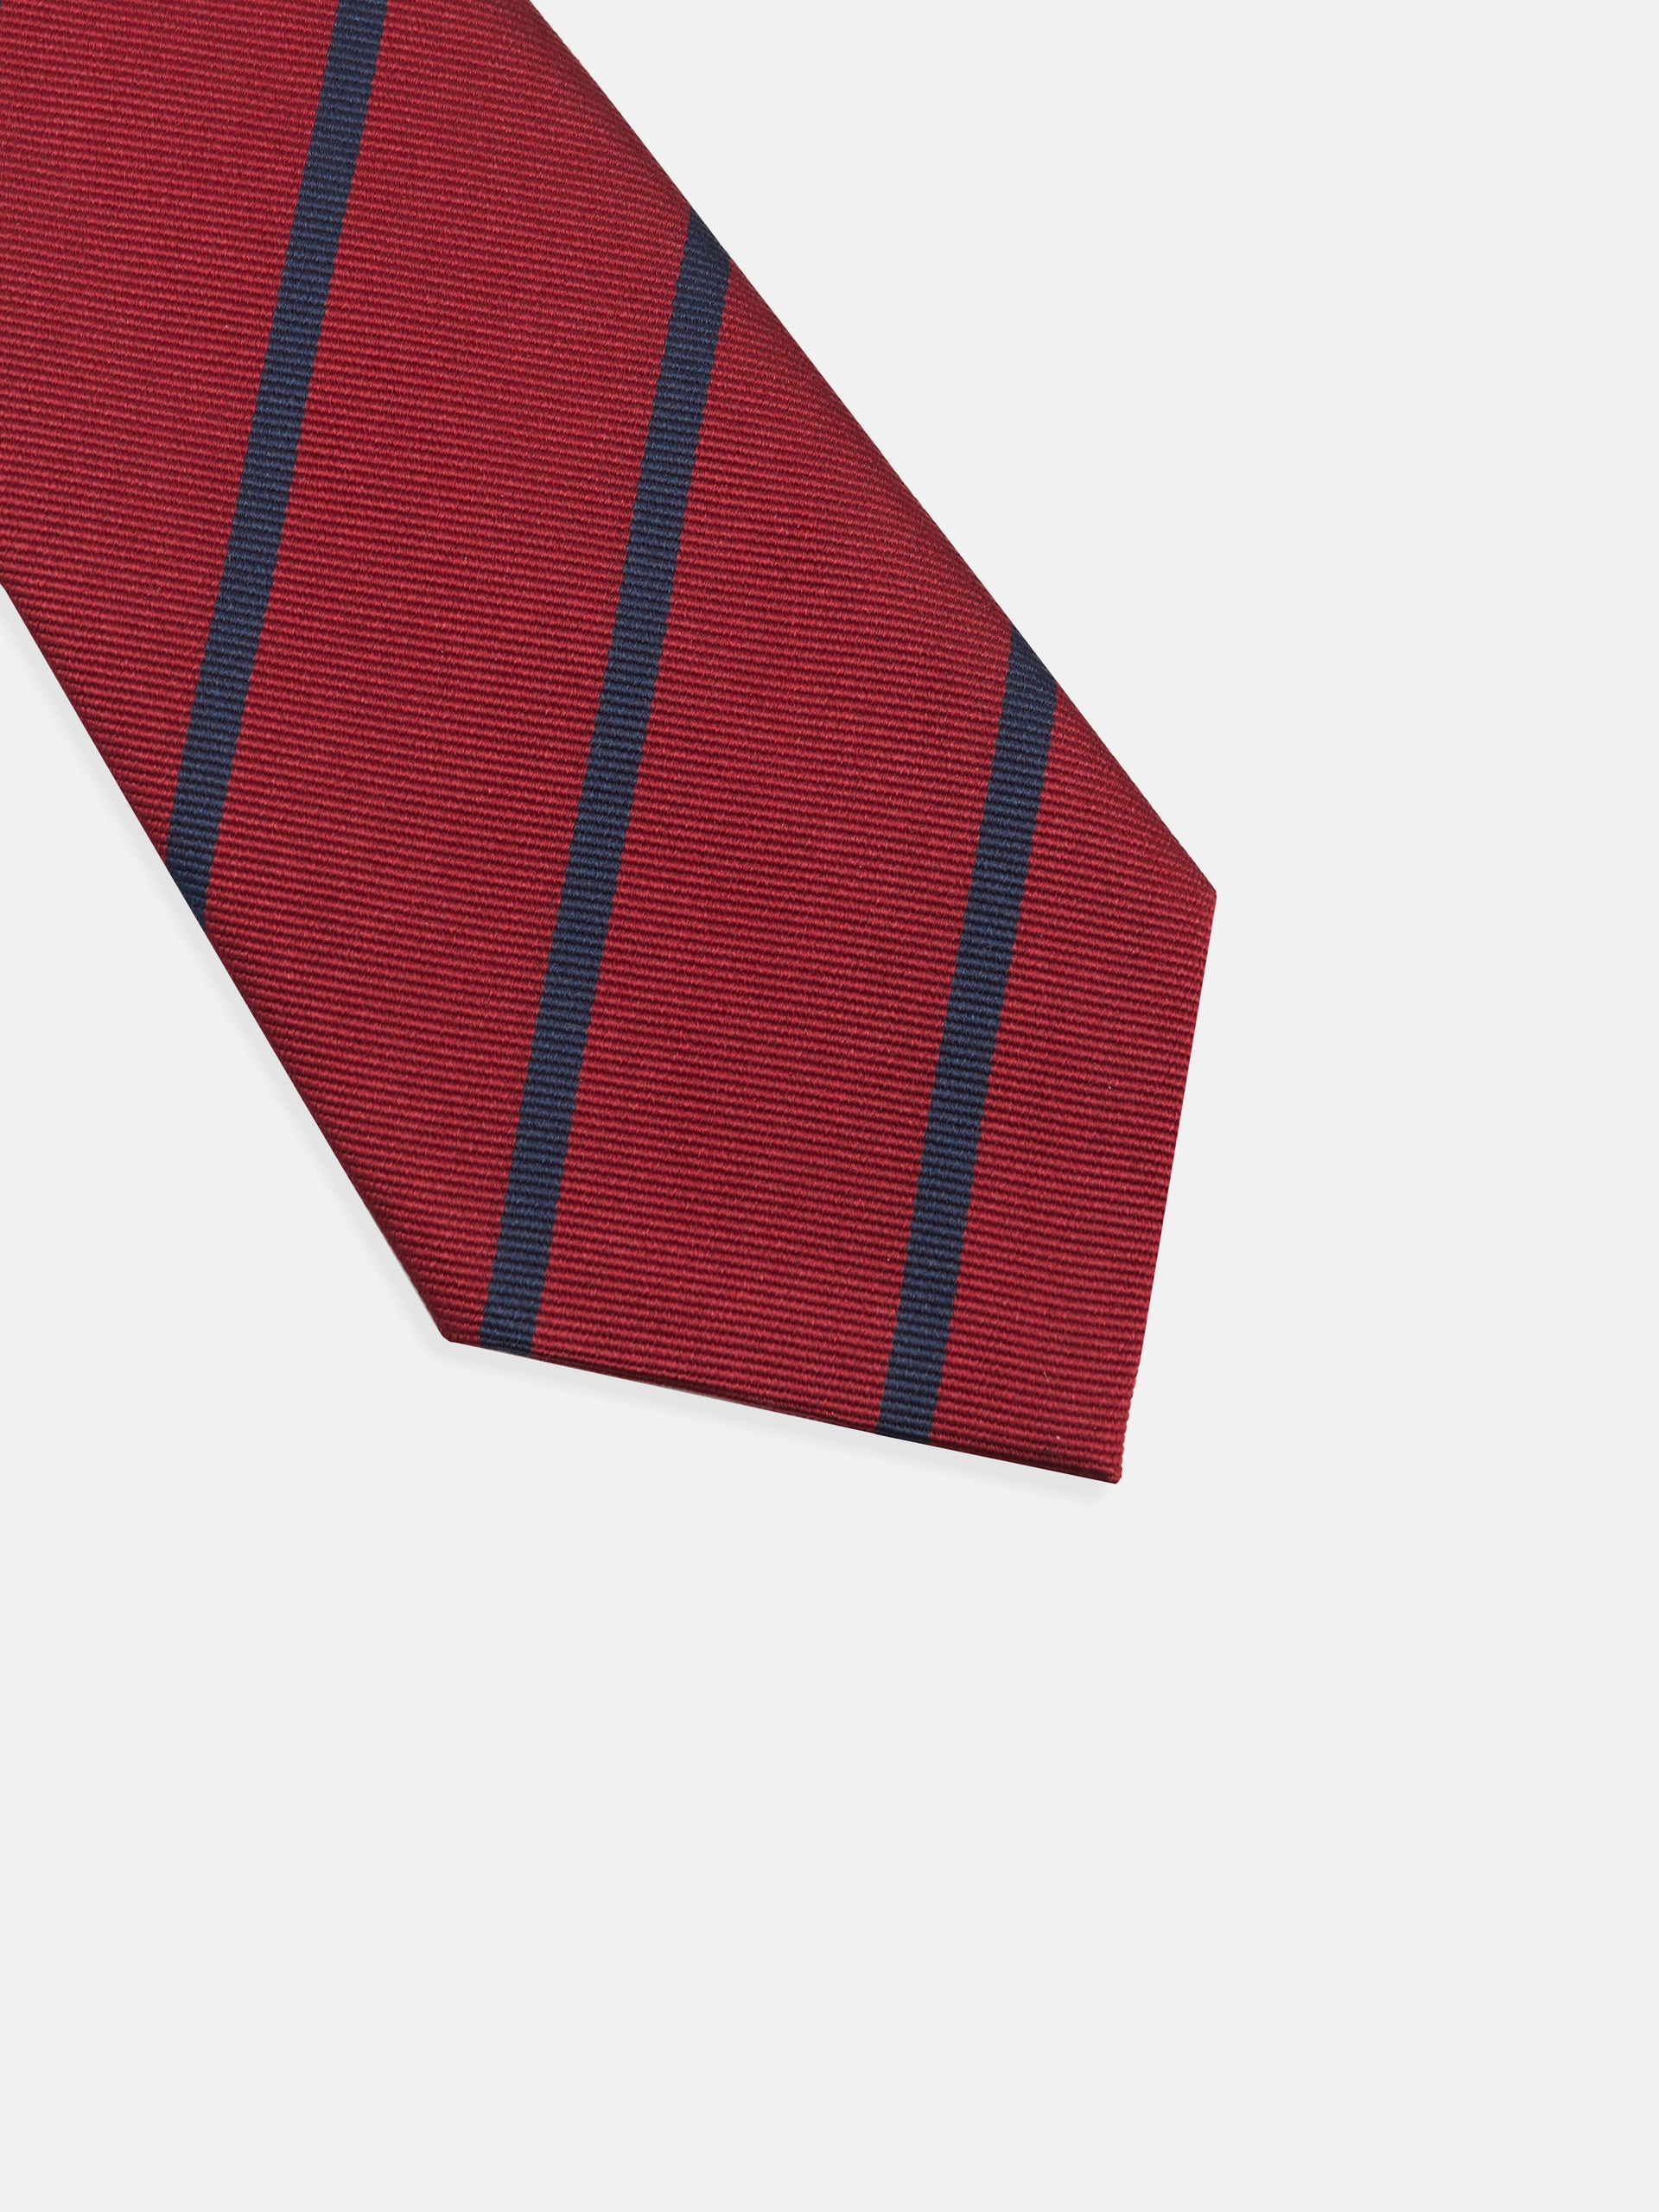 Cravate rayée bordeaux